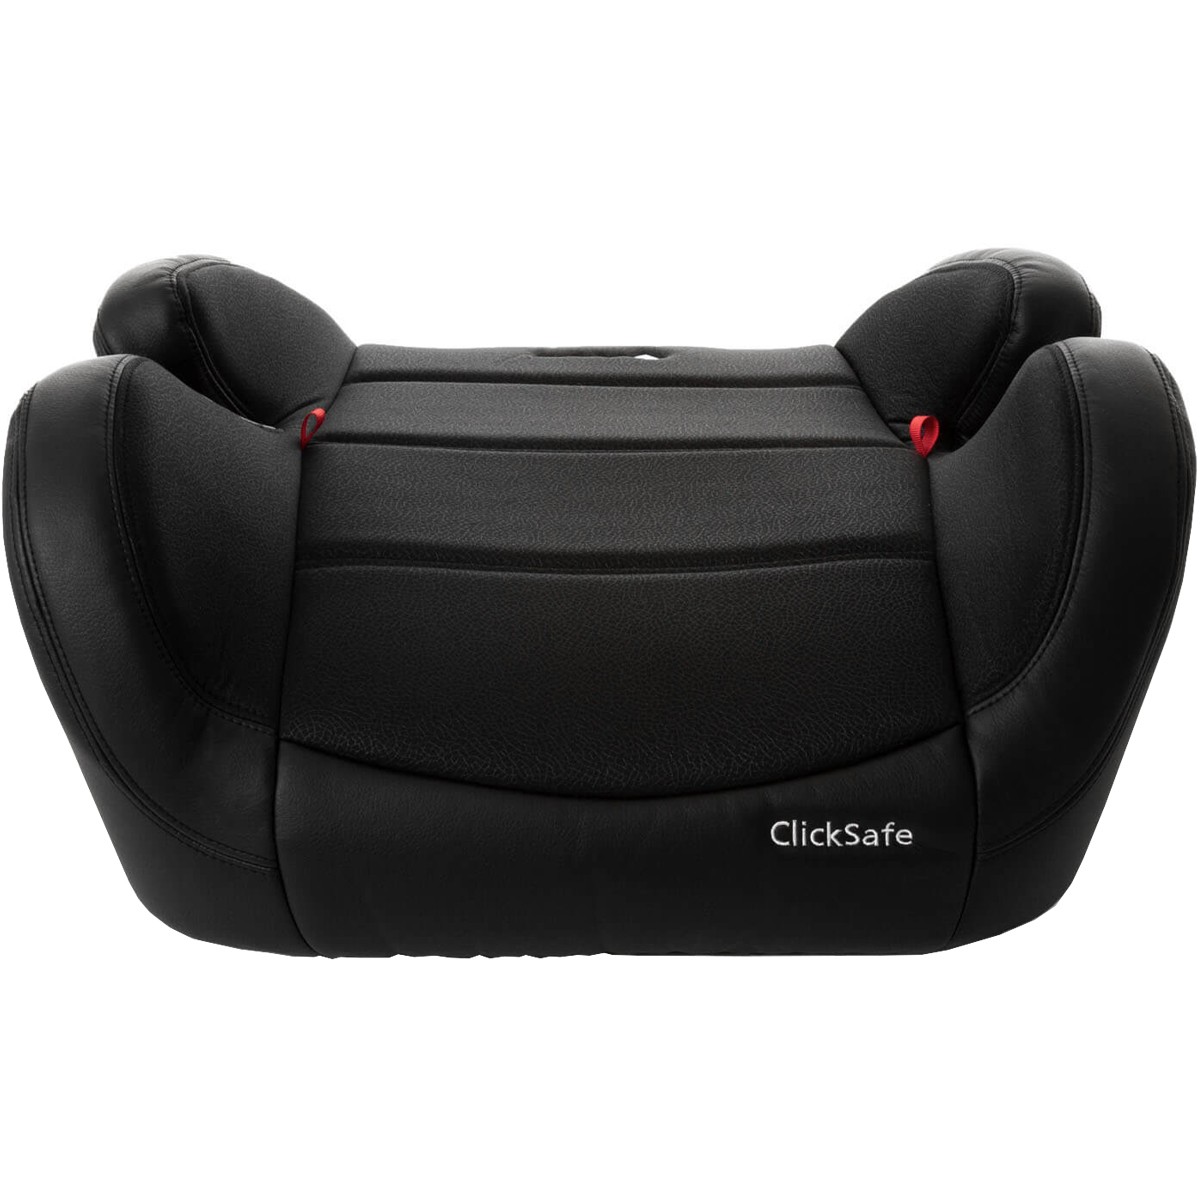 Assento Booster Isofix Infantil para Carro Criança De 15 a 36kg Click Safe Preto - Safety